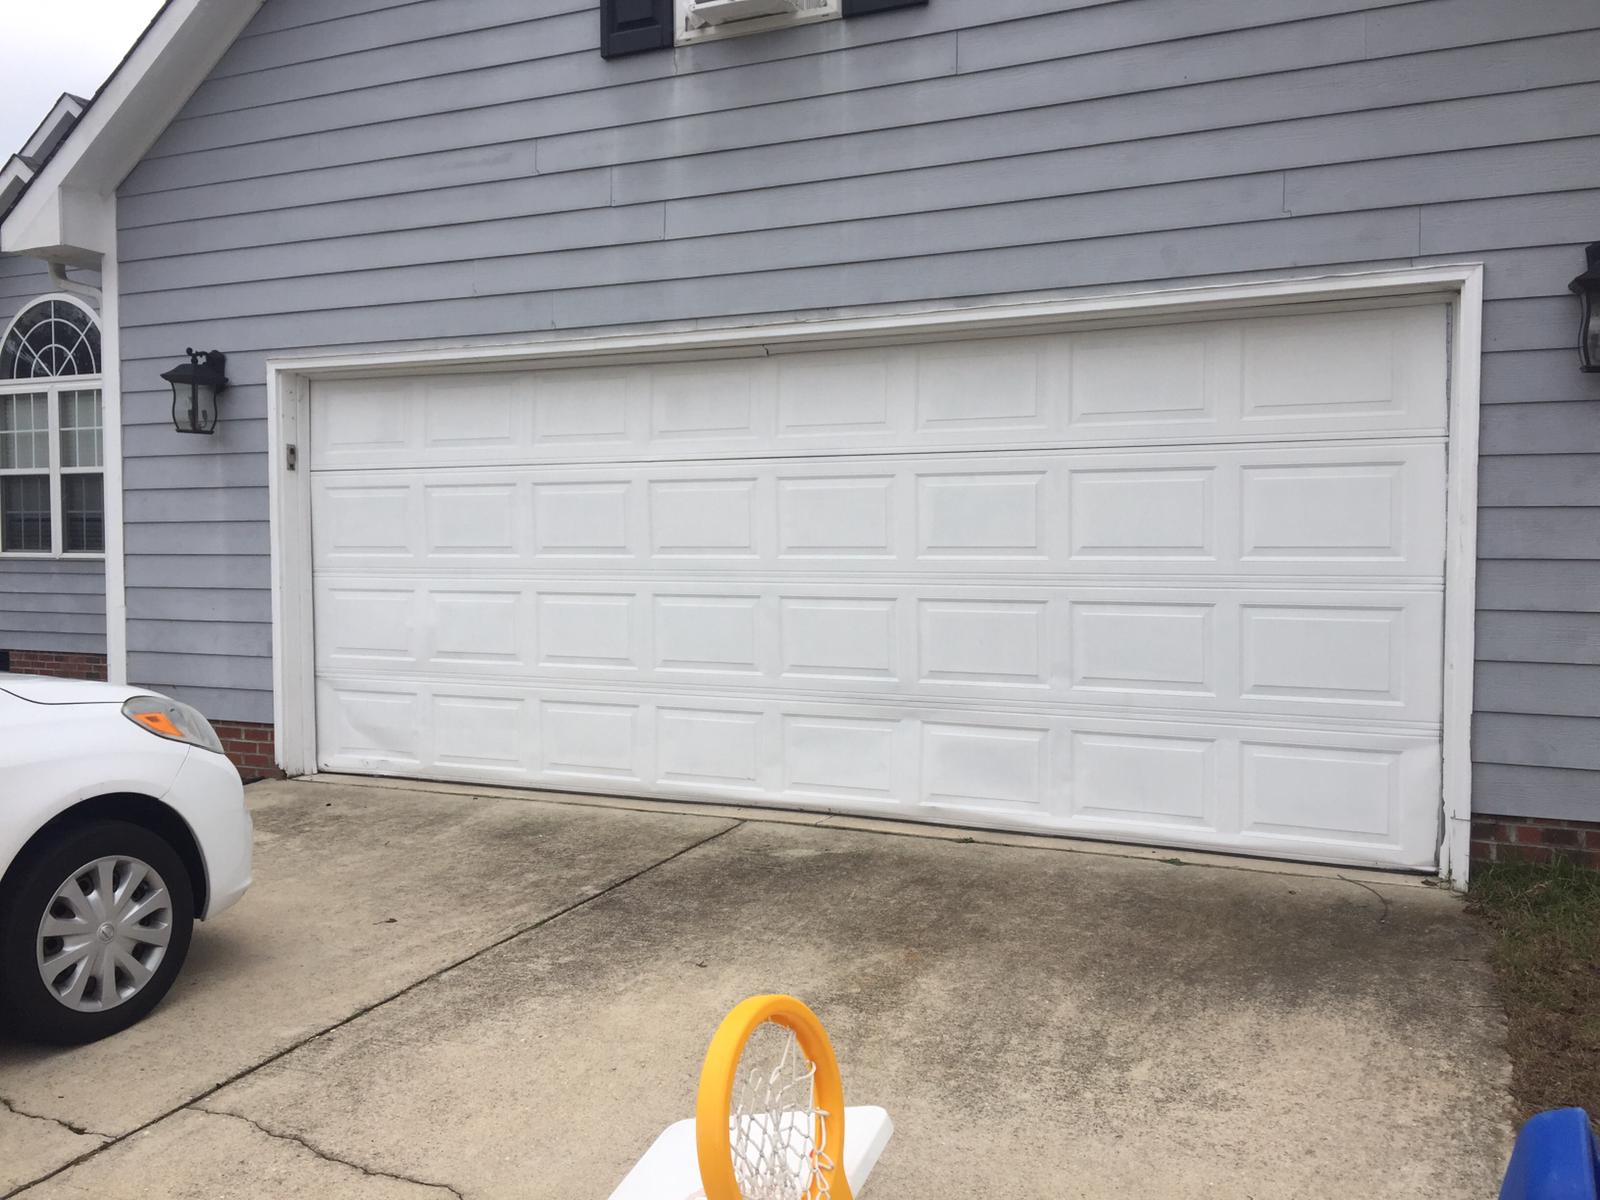 New Garage Door Jobs North Carolina for Simple Design